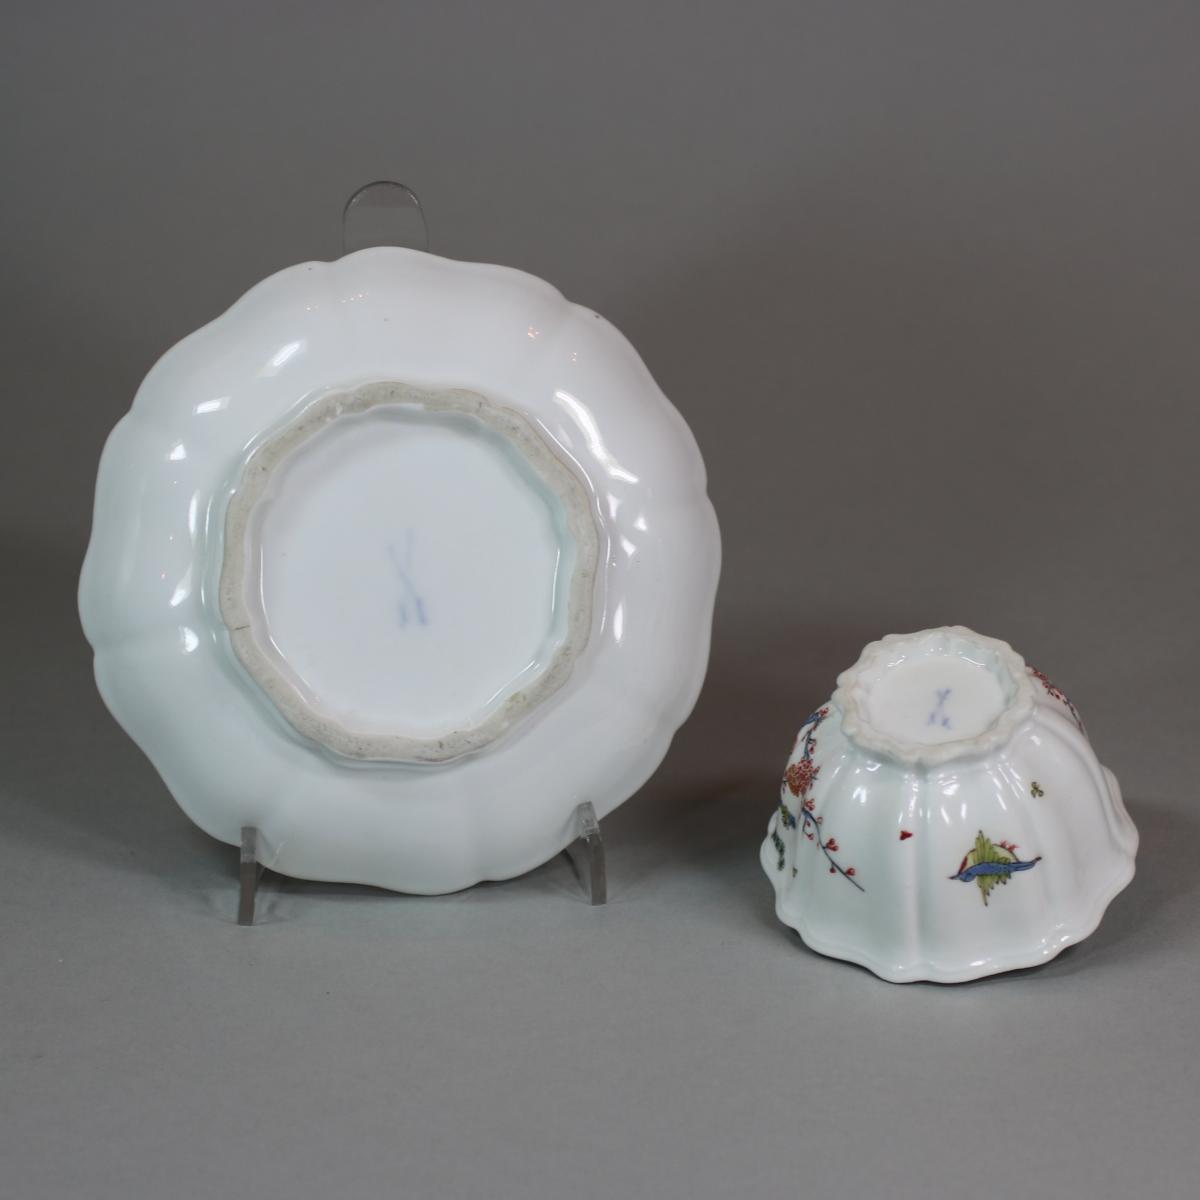 Meissen octafoil teabowl